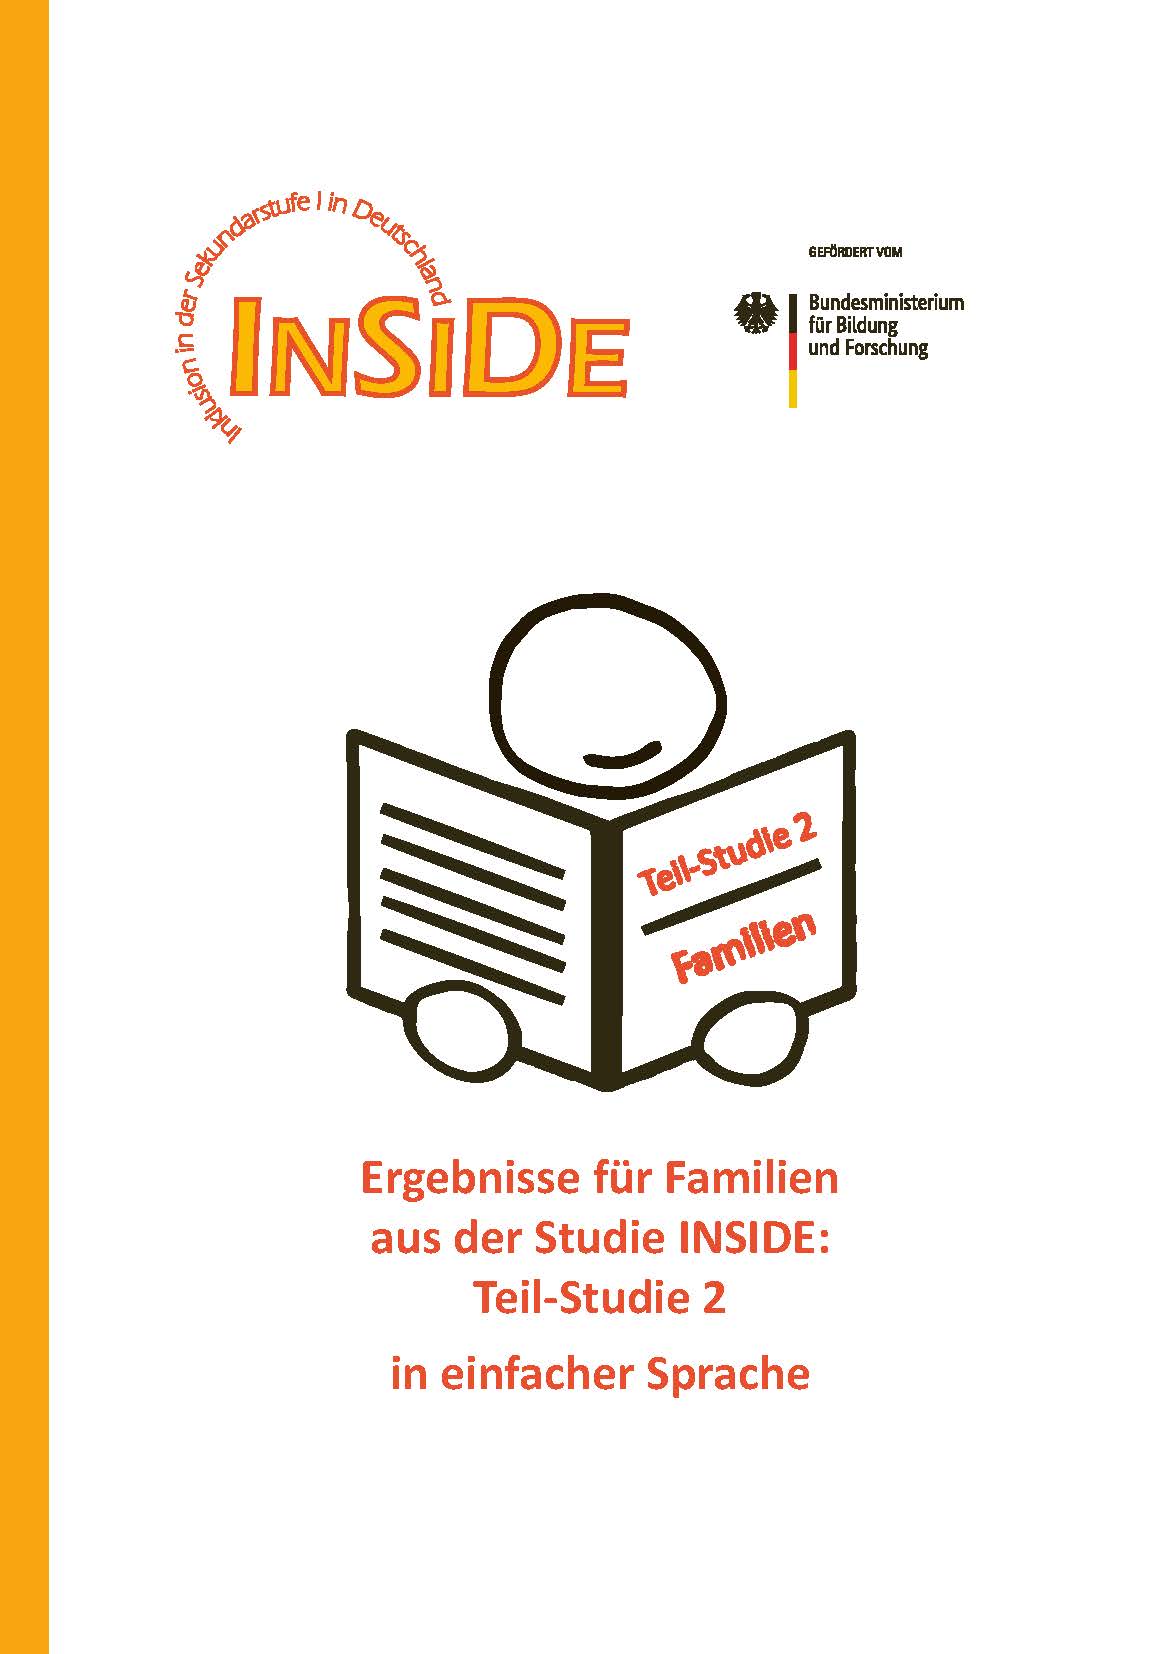 INSIDE-Ergebnisbroschüre für Familien zu Teilstudie 2 in einfacher Sprache